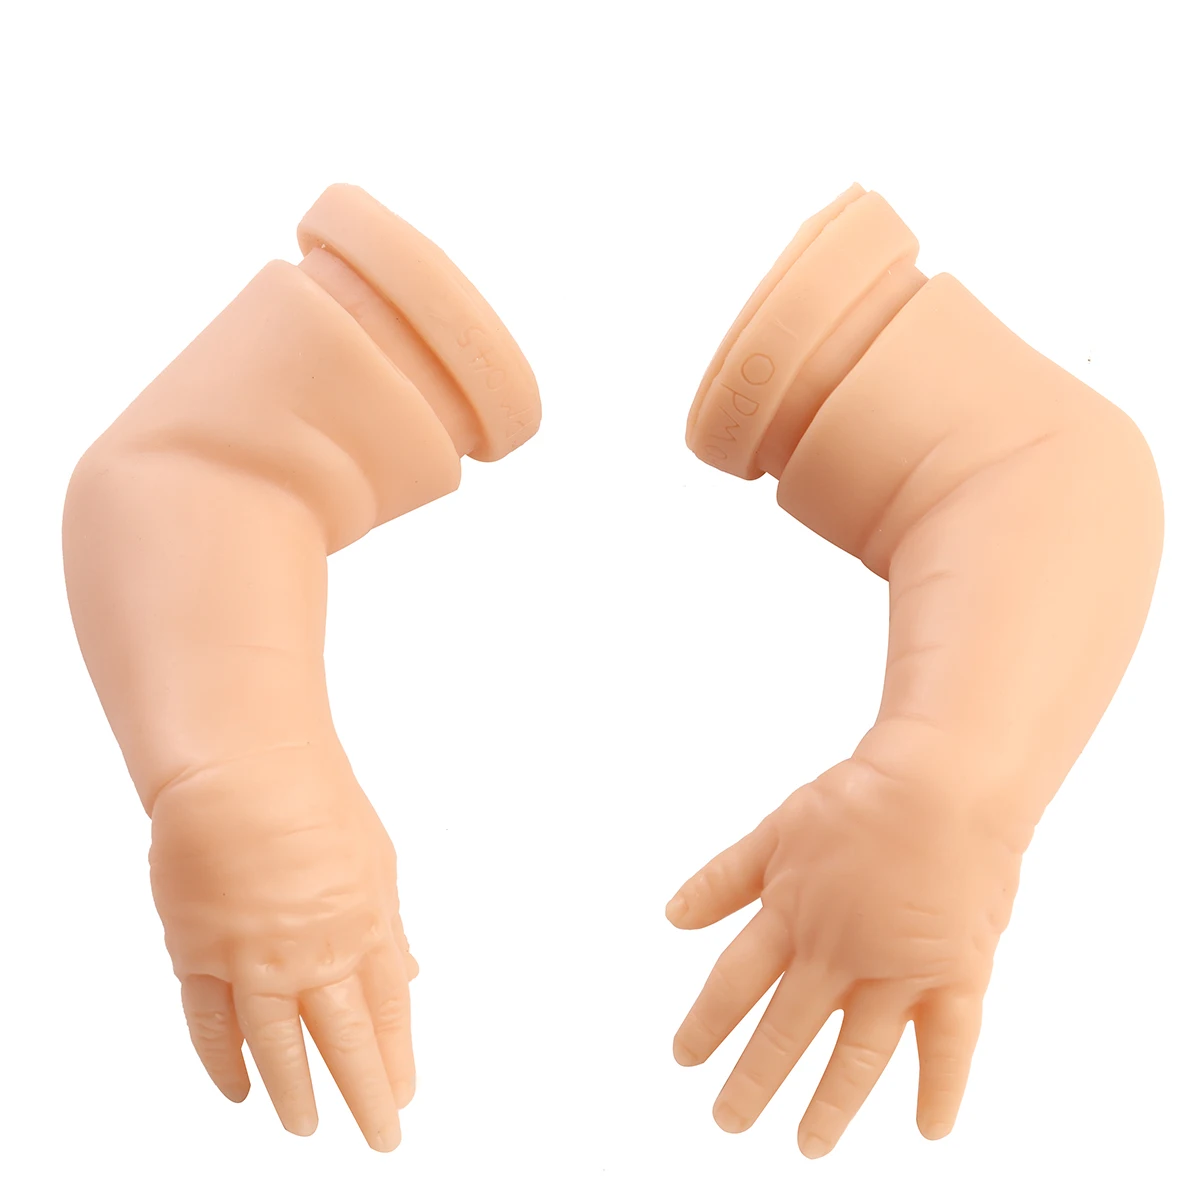 18 дюймов DIY модельный комплект руки и полные ноги силиконовые виниловые Reborn куклы комплект аксессуары реалистичные детские игрушки Reborn для Рождества